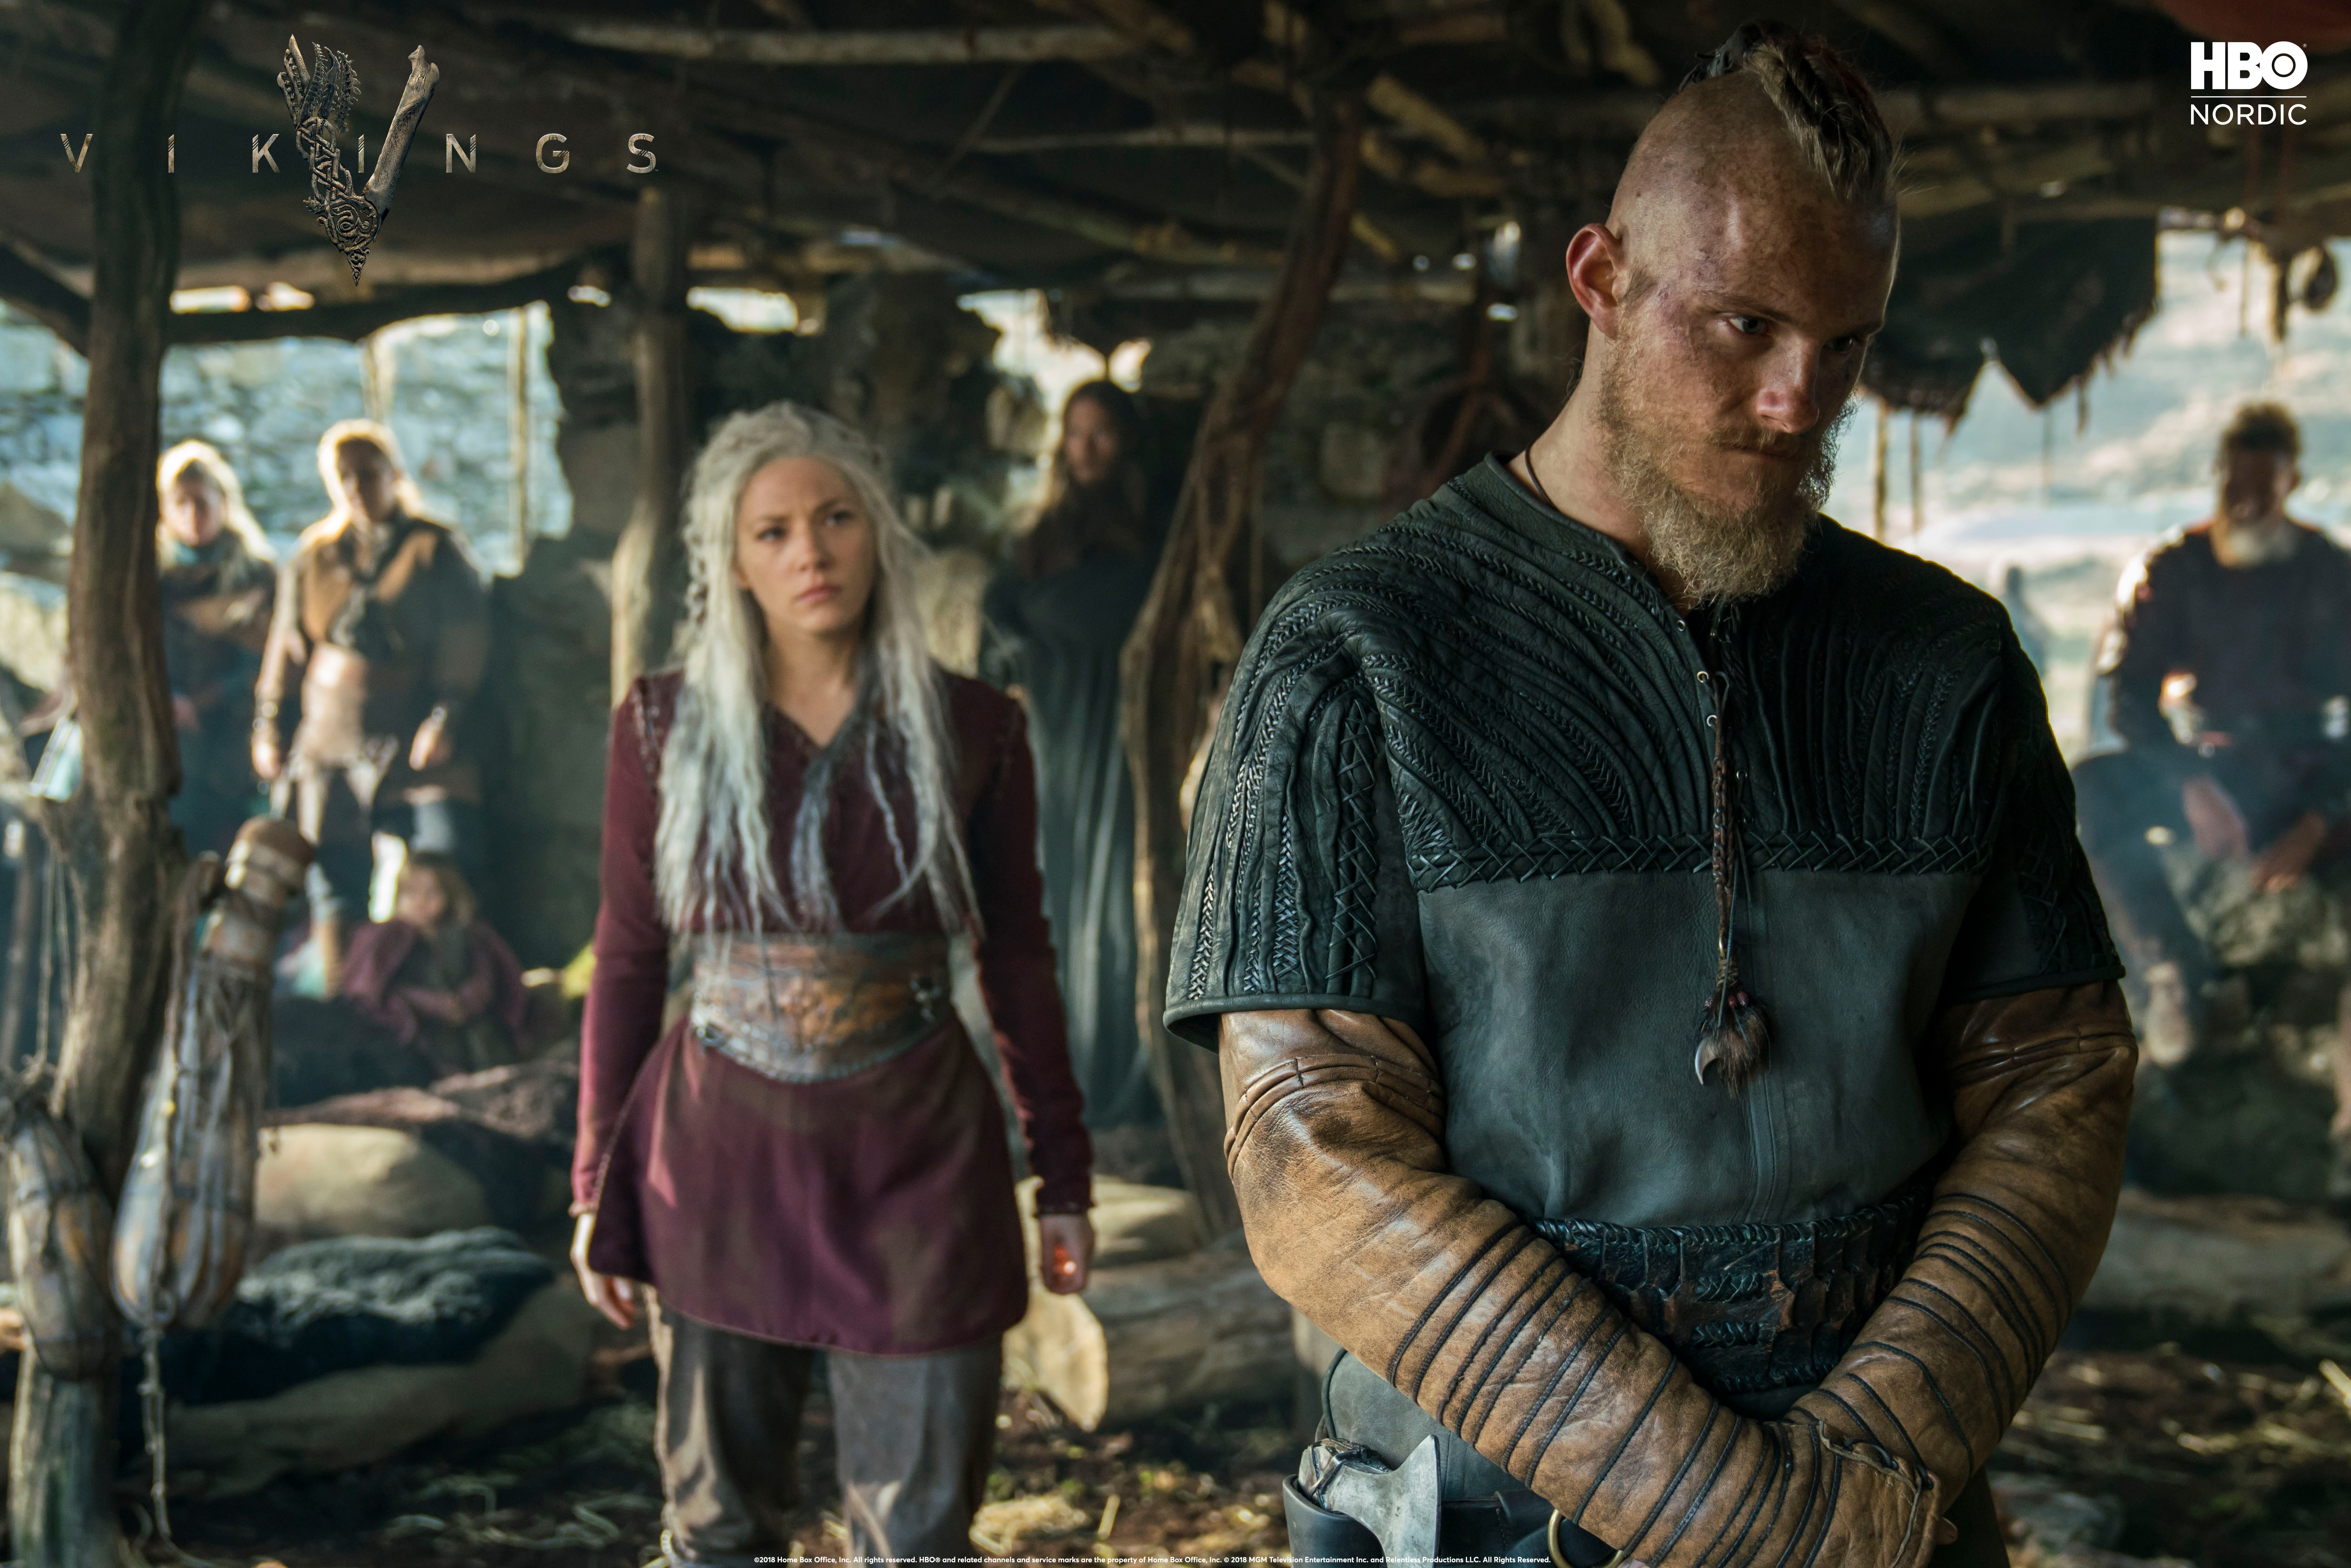 Se Vikings på HBO Nordic med RiksTV